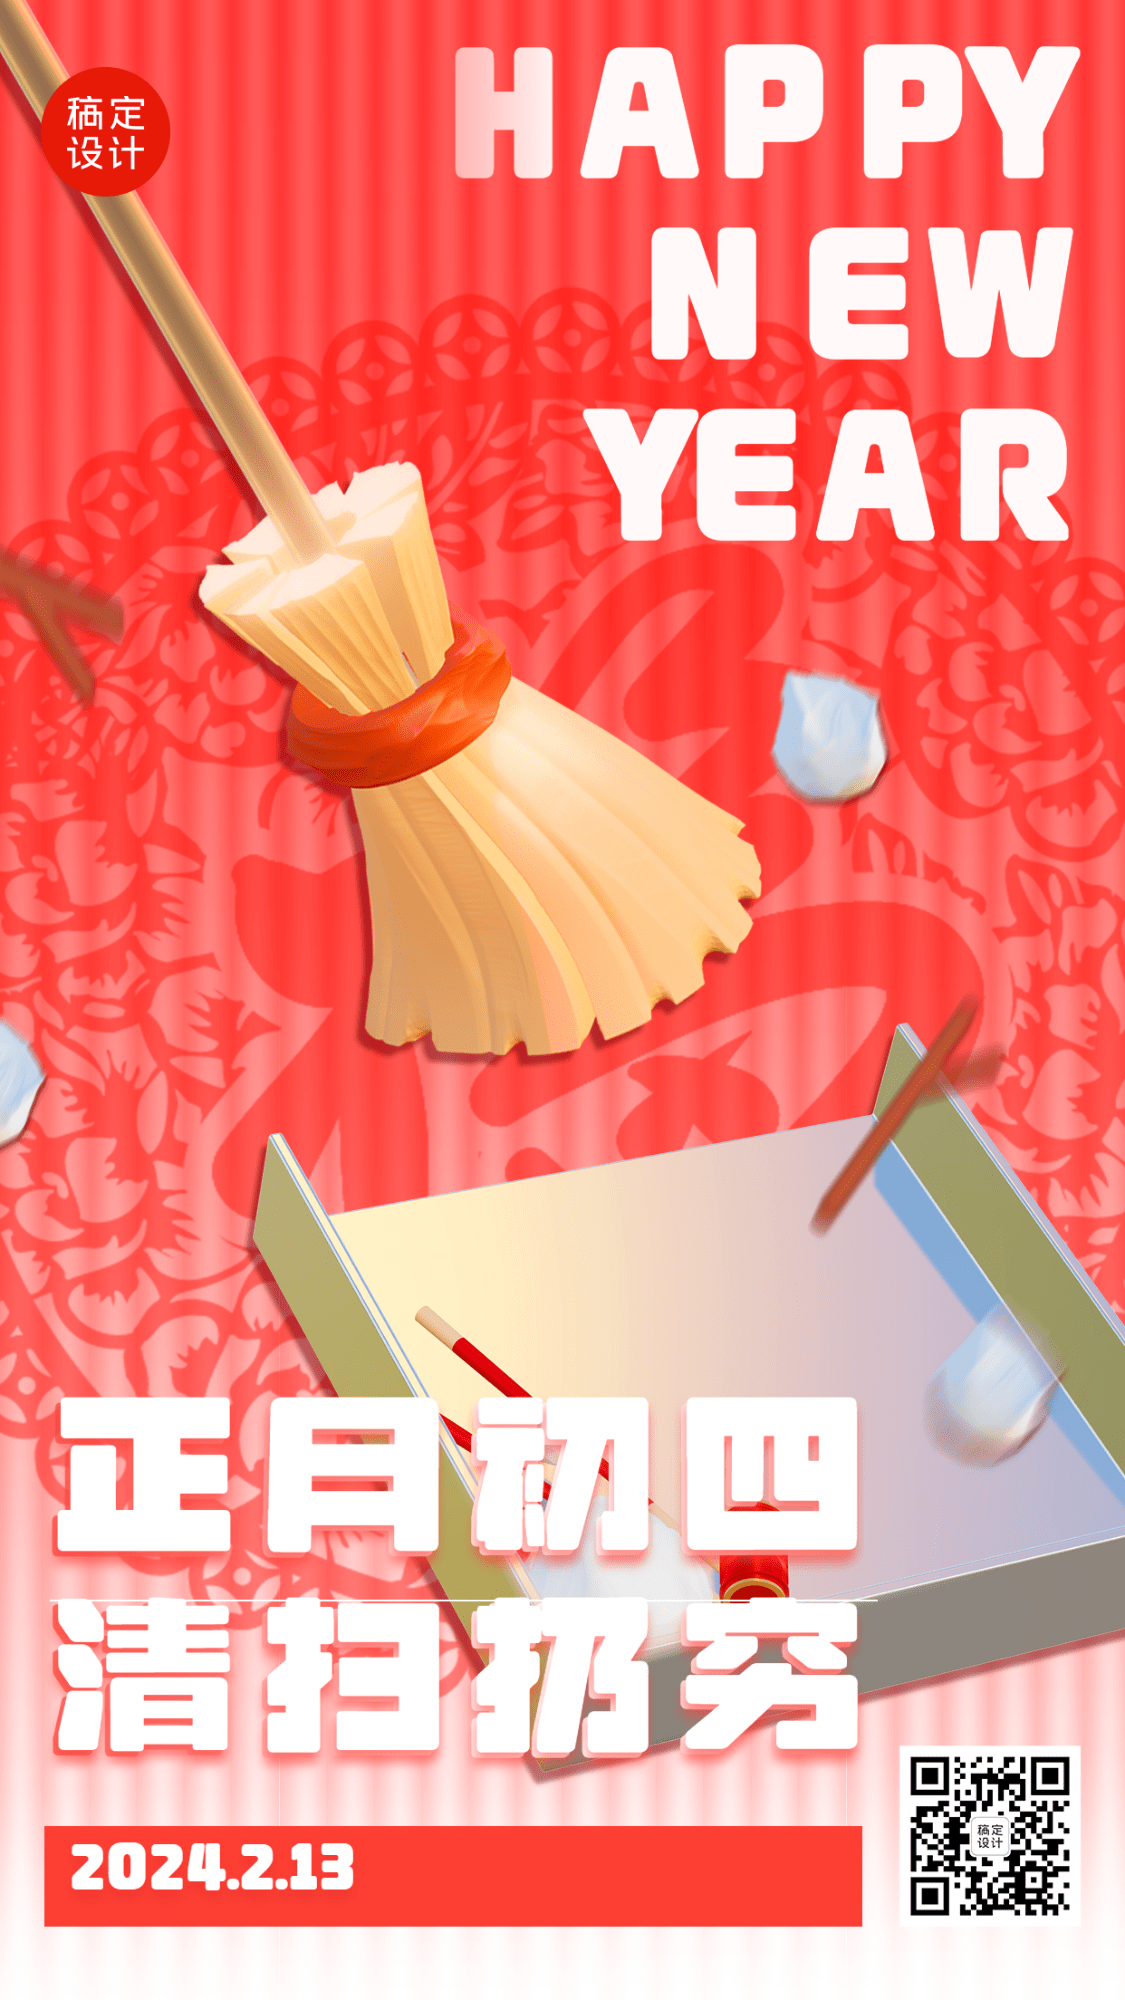 春节正月套系初四清扫扔穷手机海报预览效果